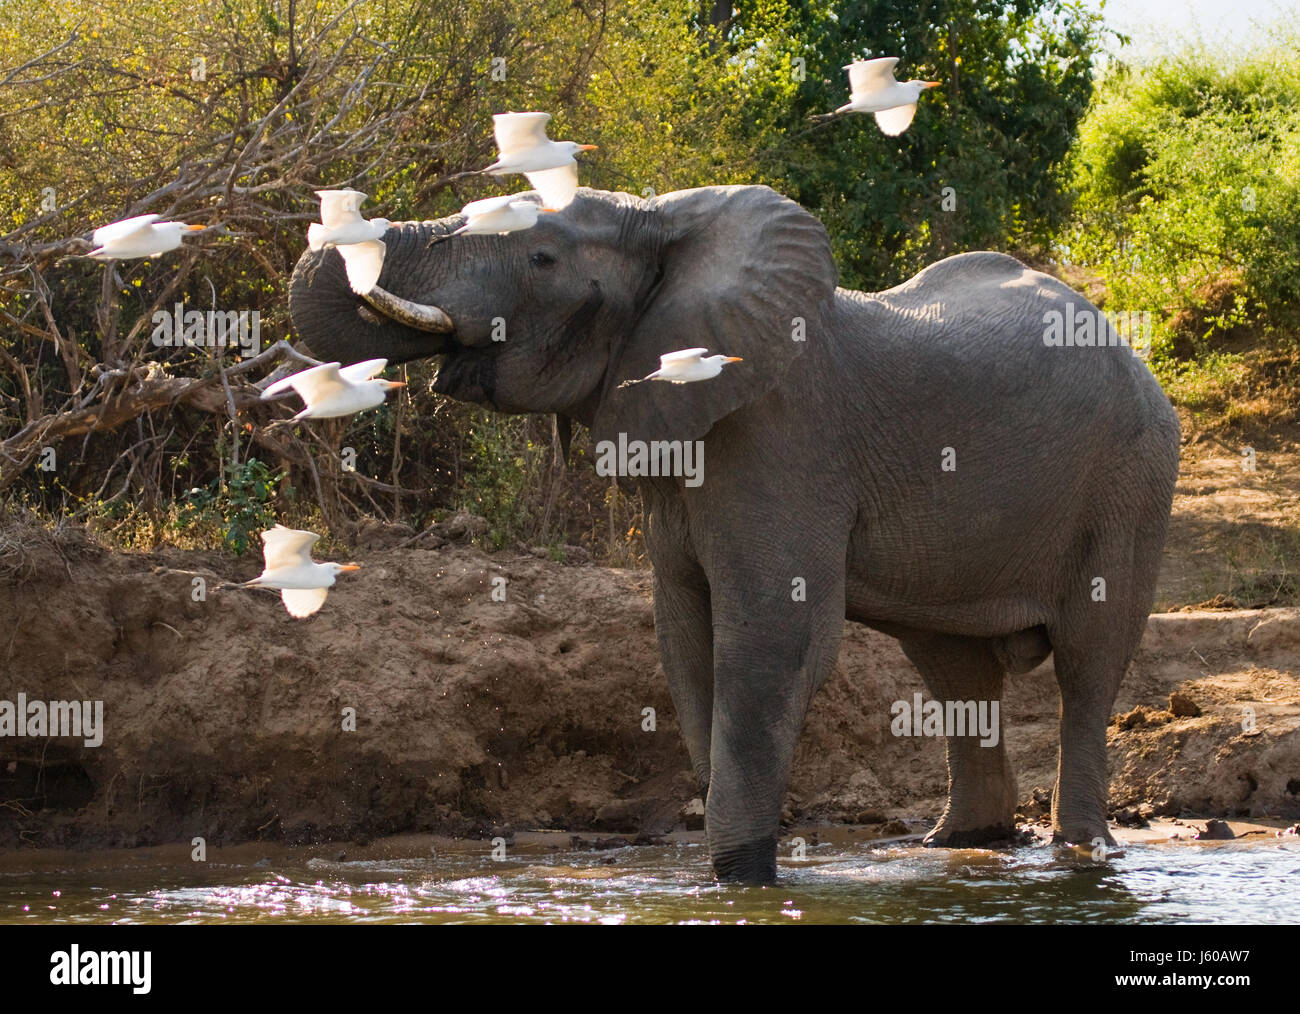 L'éléphant est entouré de hérons blancs. Zambie. Parc national du Bas-Zambèze. Rivière Zambèze. Banque D'Images